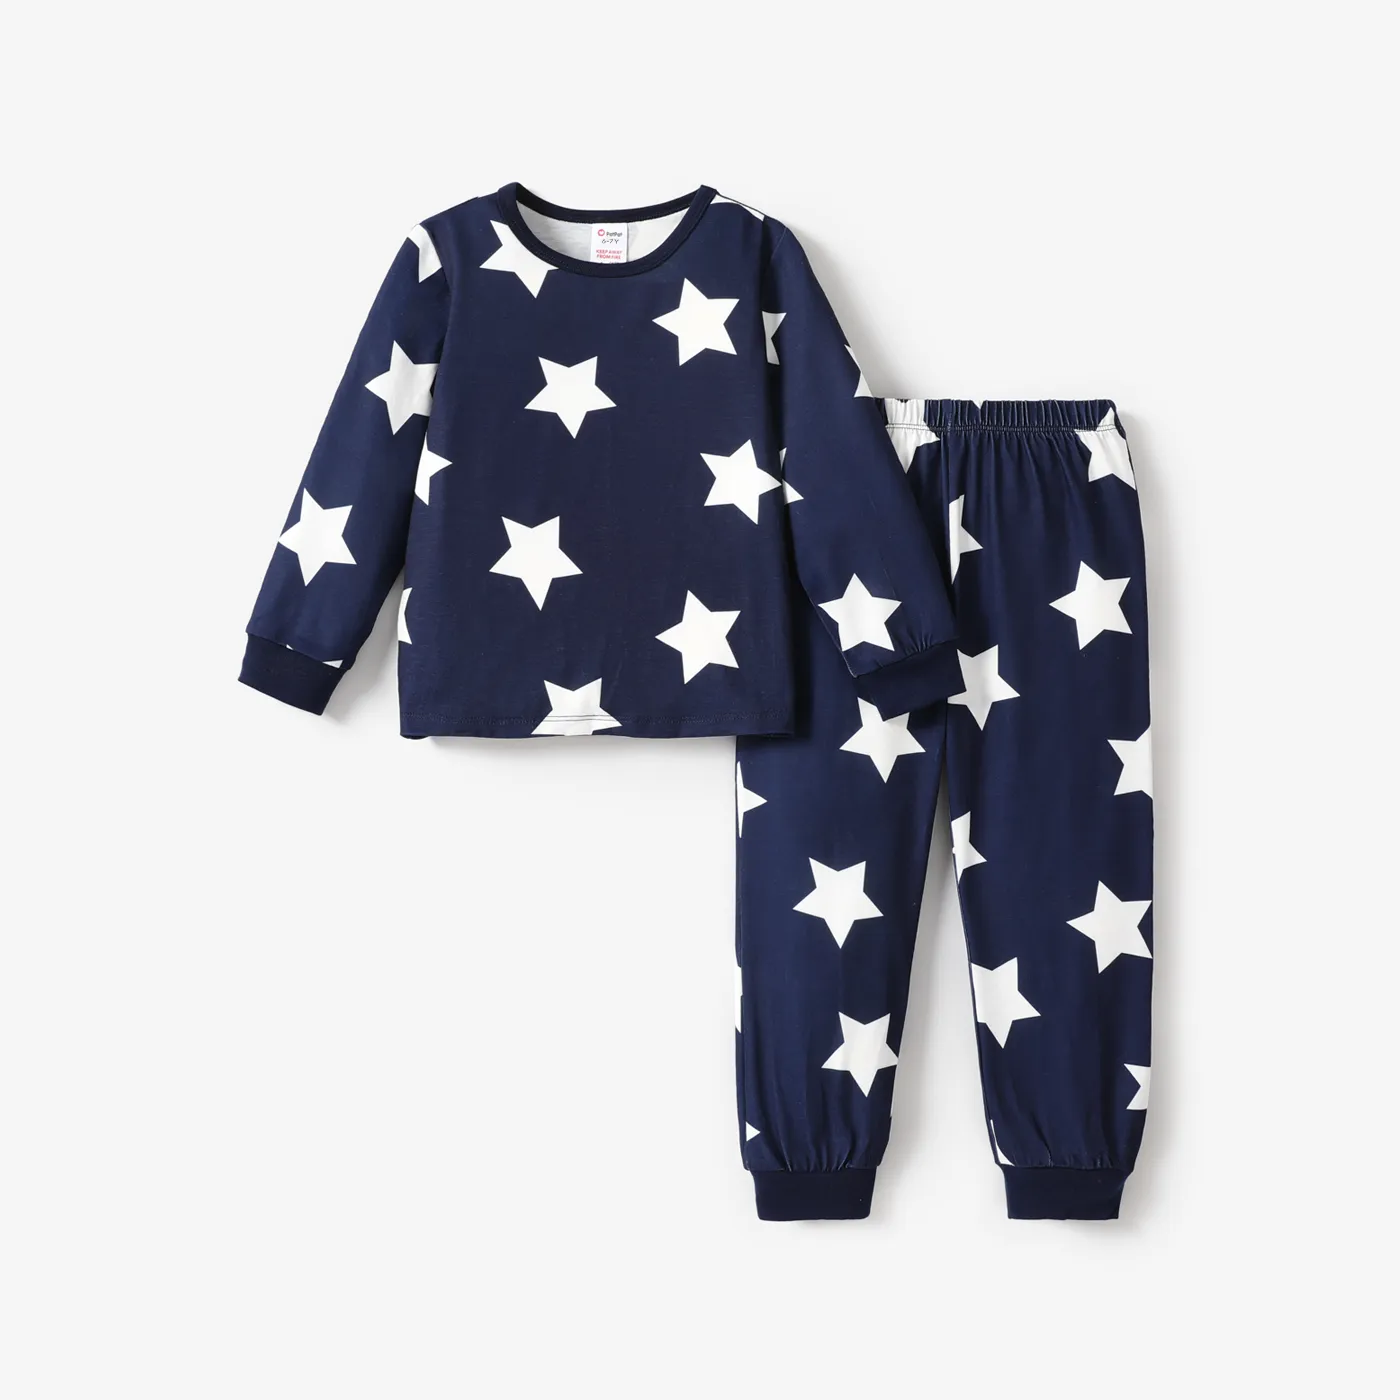 2pcs Toddler/Kid Boy Stripe Casual Pajamas Set